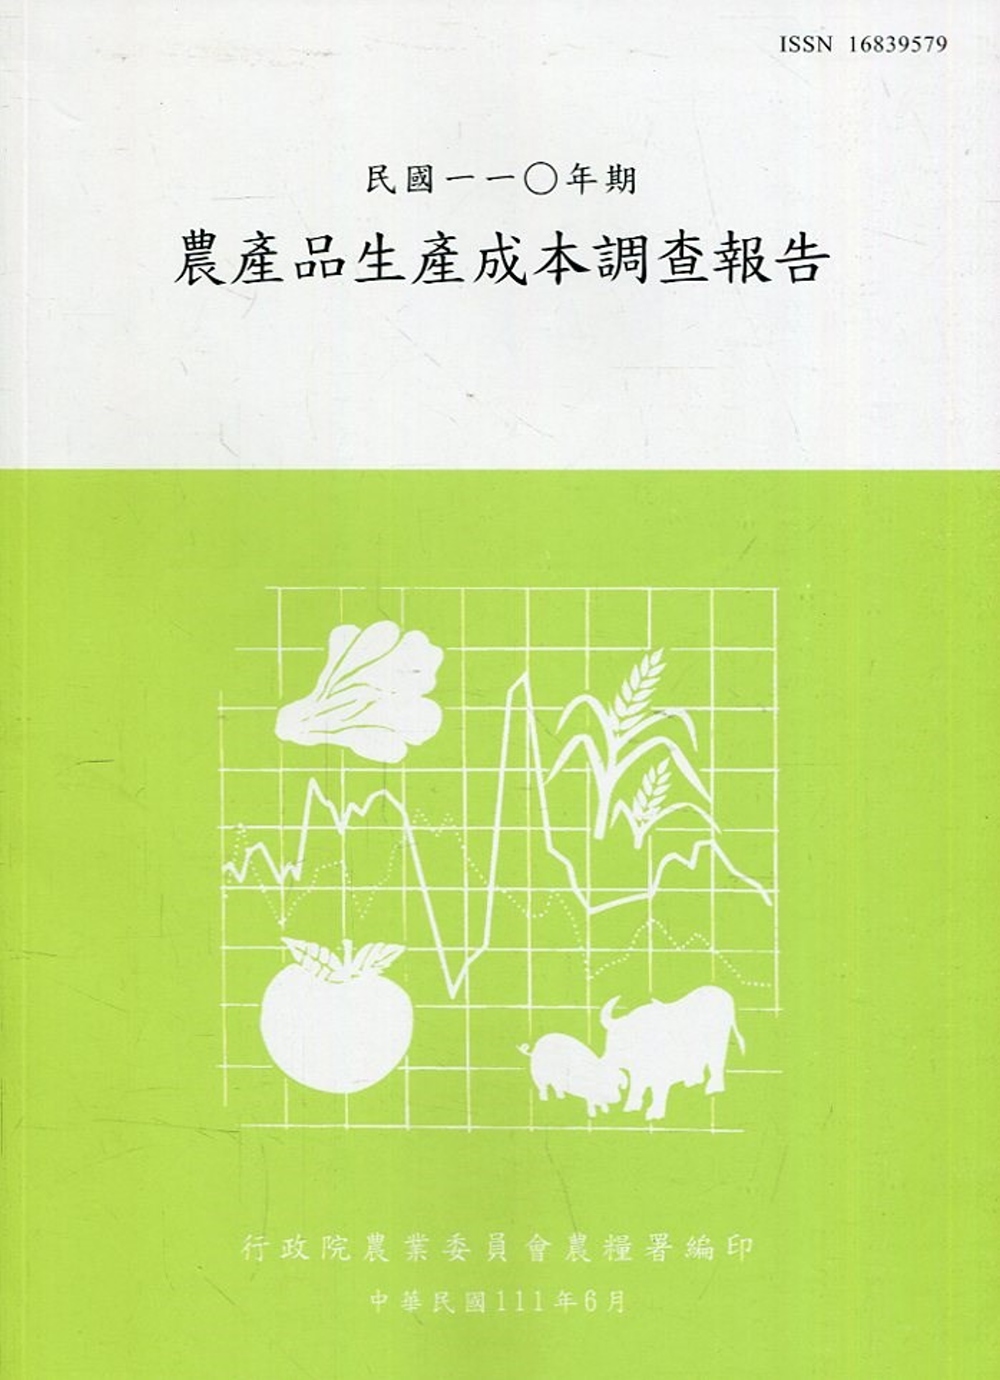 農產品生產成本調查報告110年